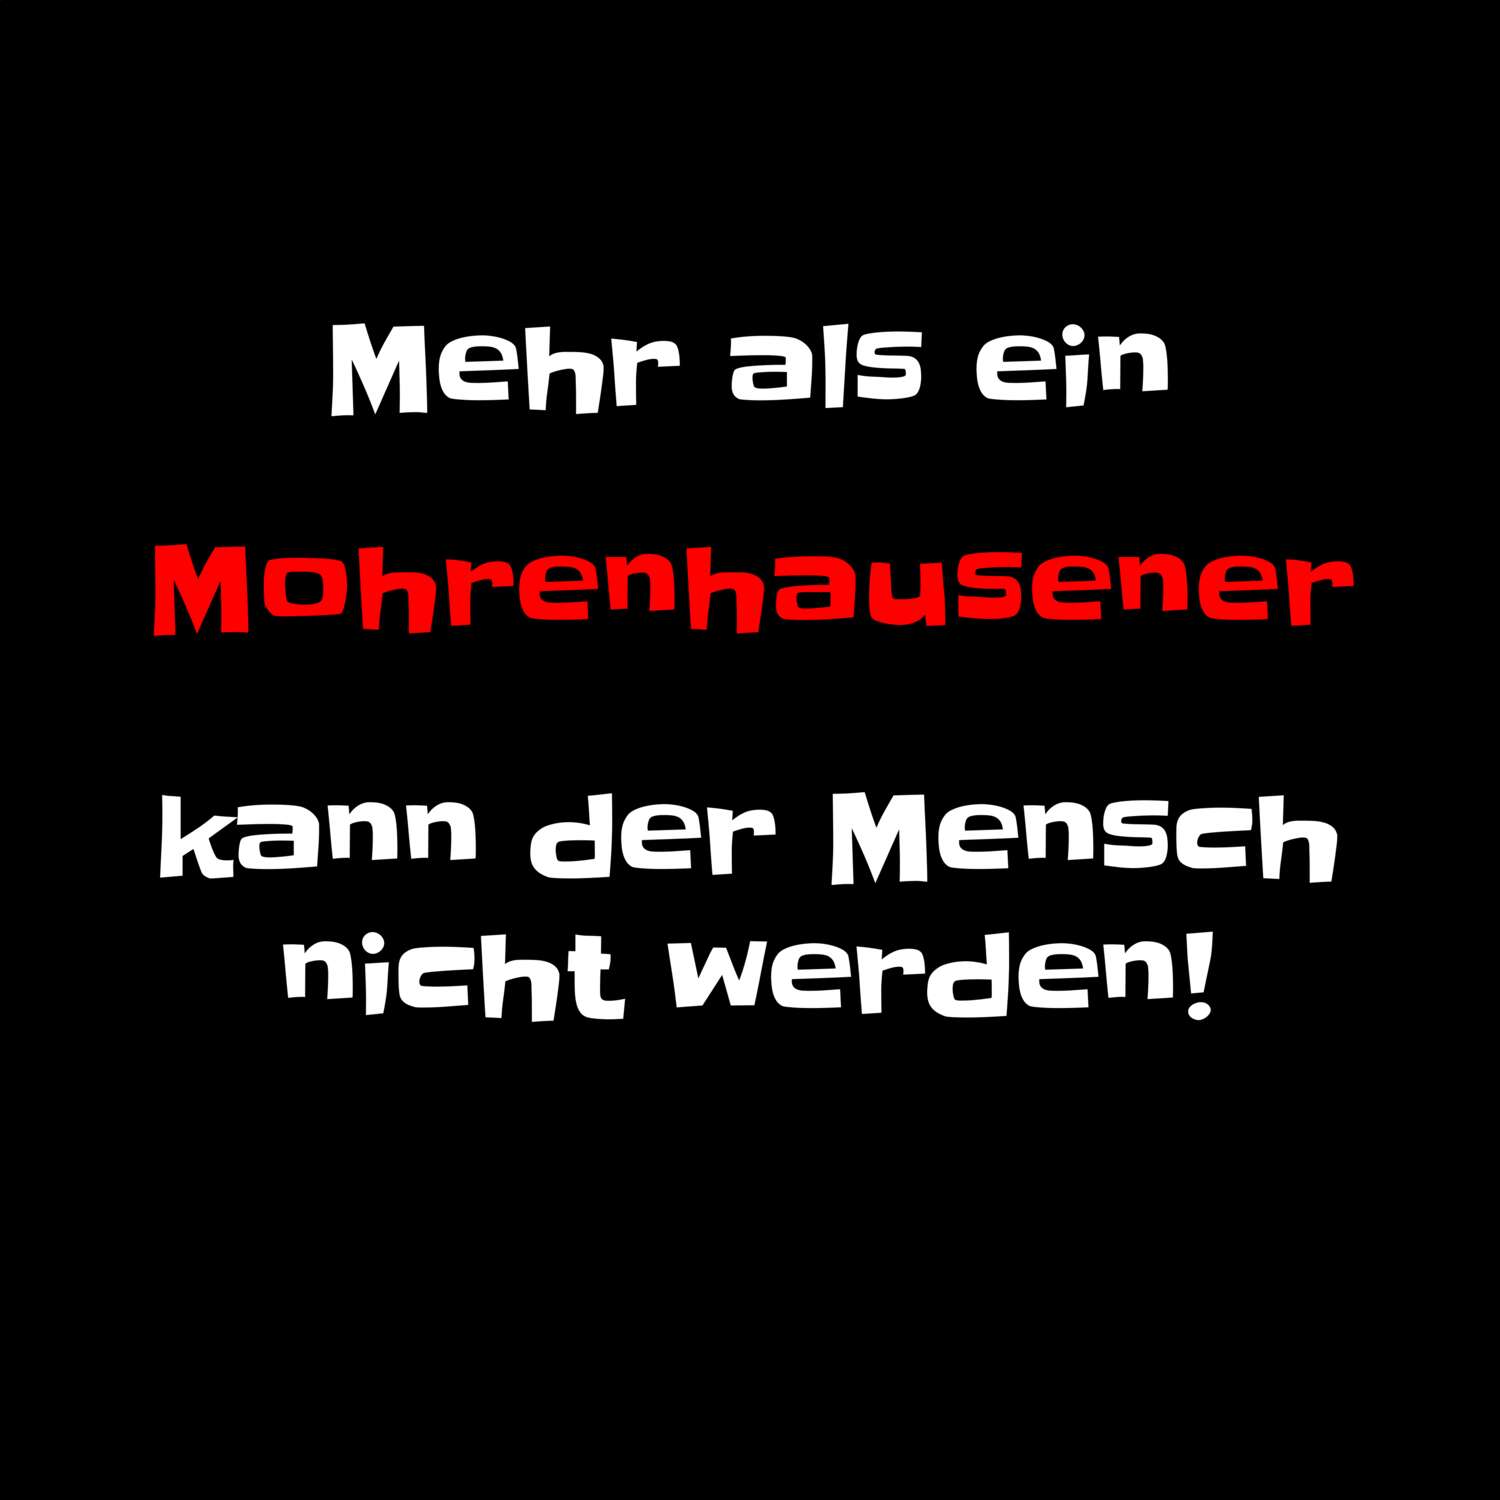 Mohrenhausen T-Shirt »Mehr als ein«